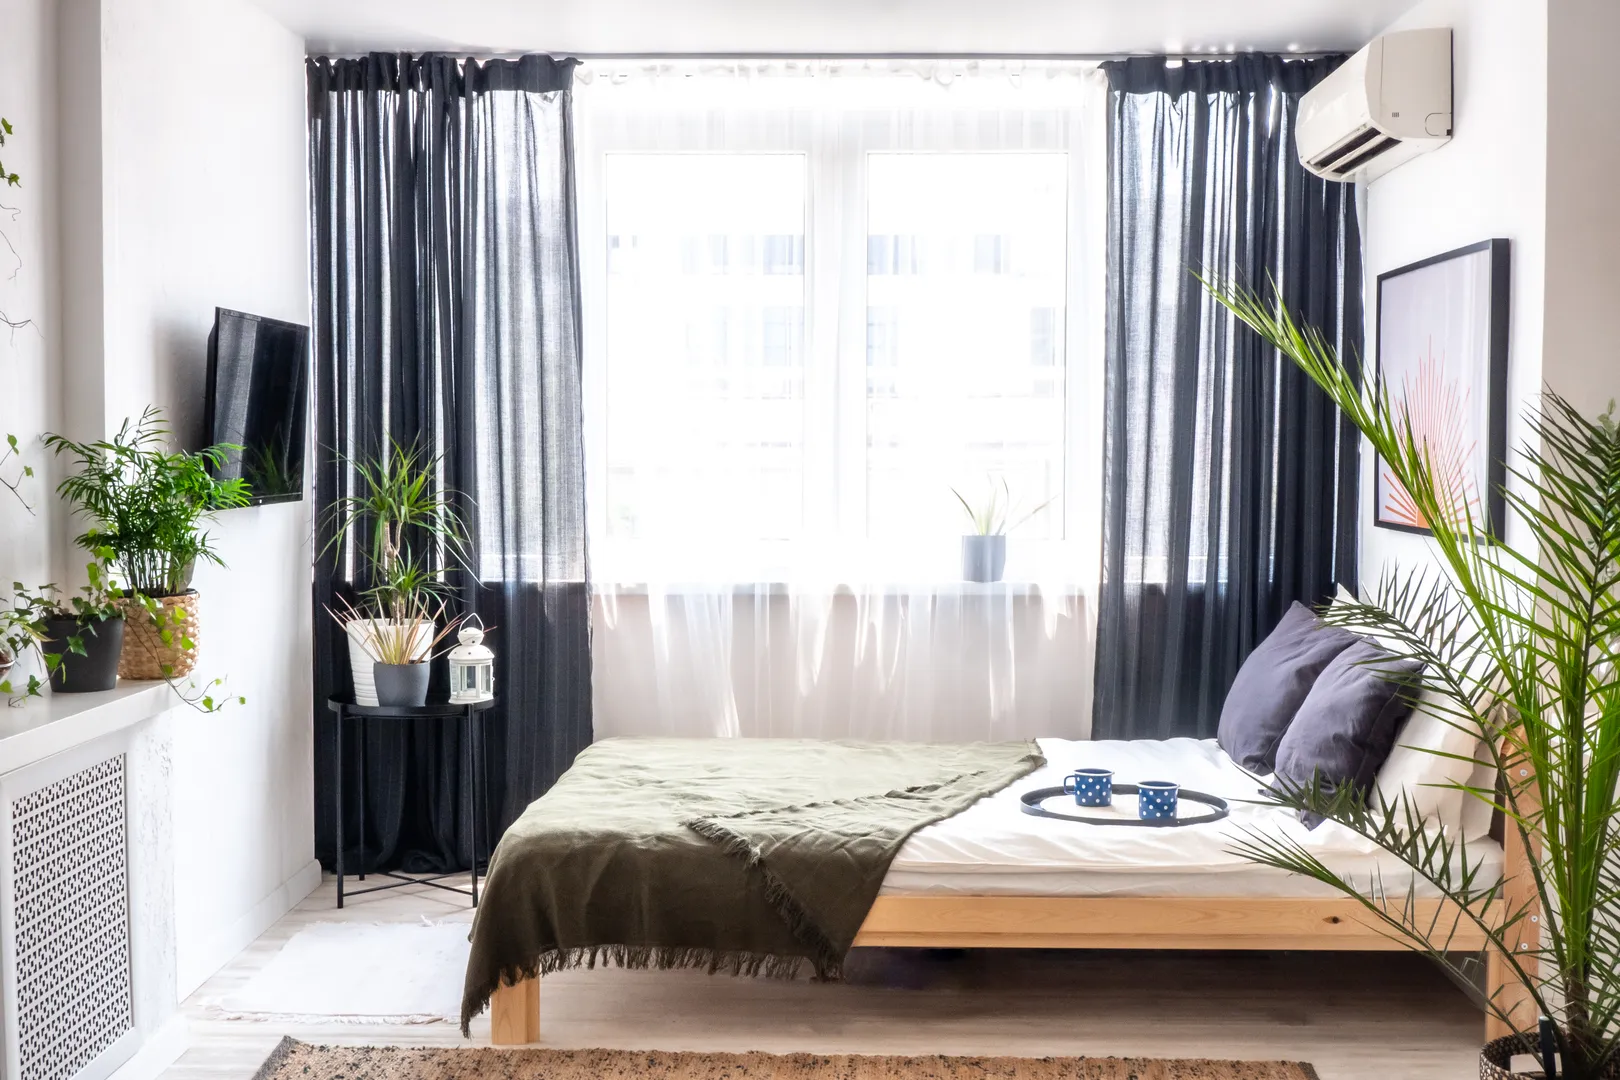 В спальной зоне стоит двуспальная кровать из дерева, телевизор со стриминговыми сервисами, затемненные шторы и натуральная пальма.